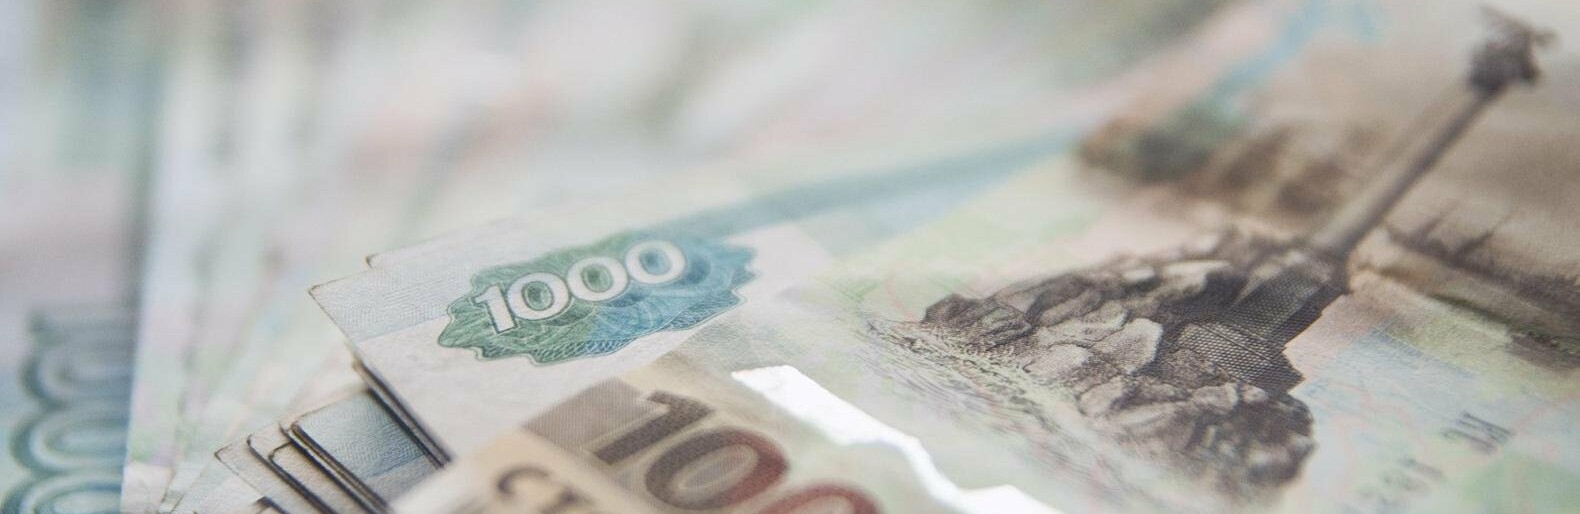 26-летняя белгородка обманула пенсионера на 8 тыс. рублей при продаже холодильника